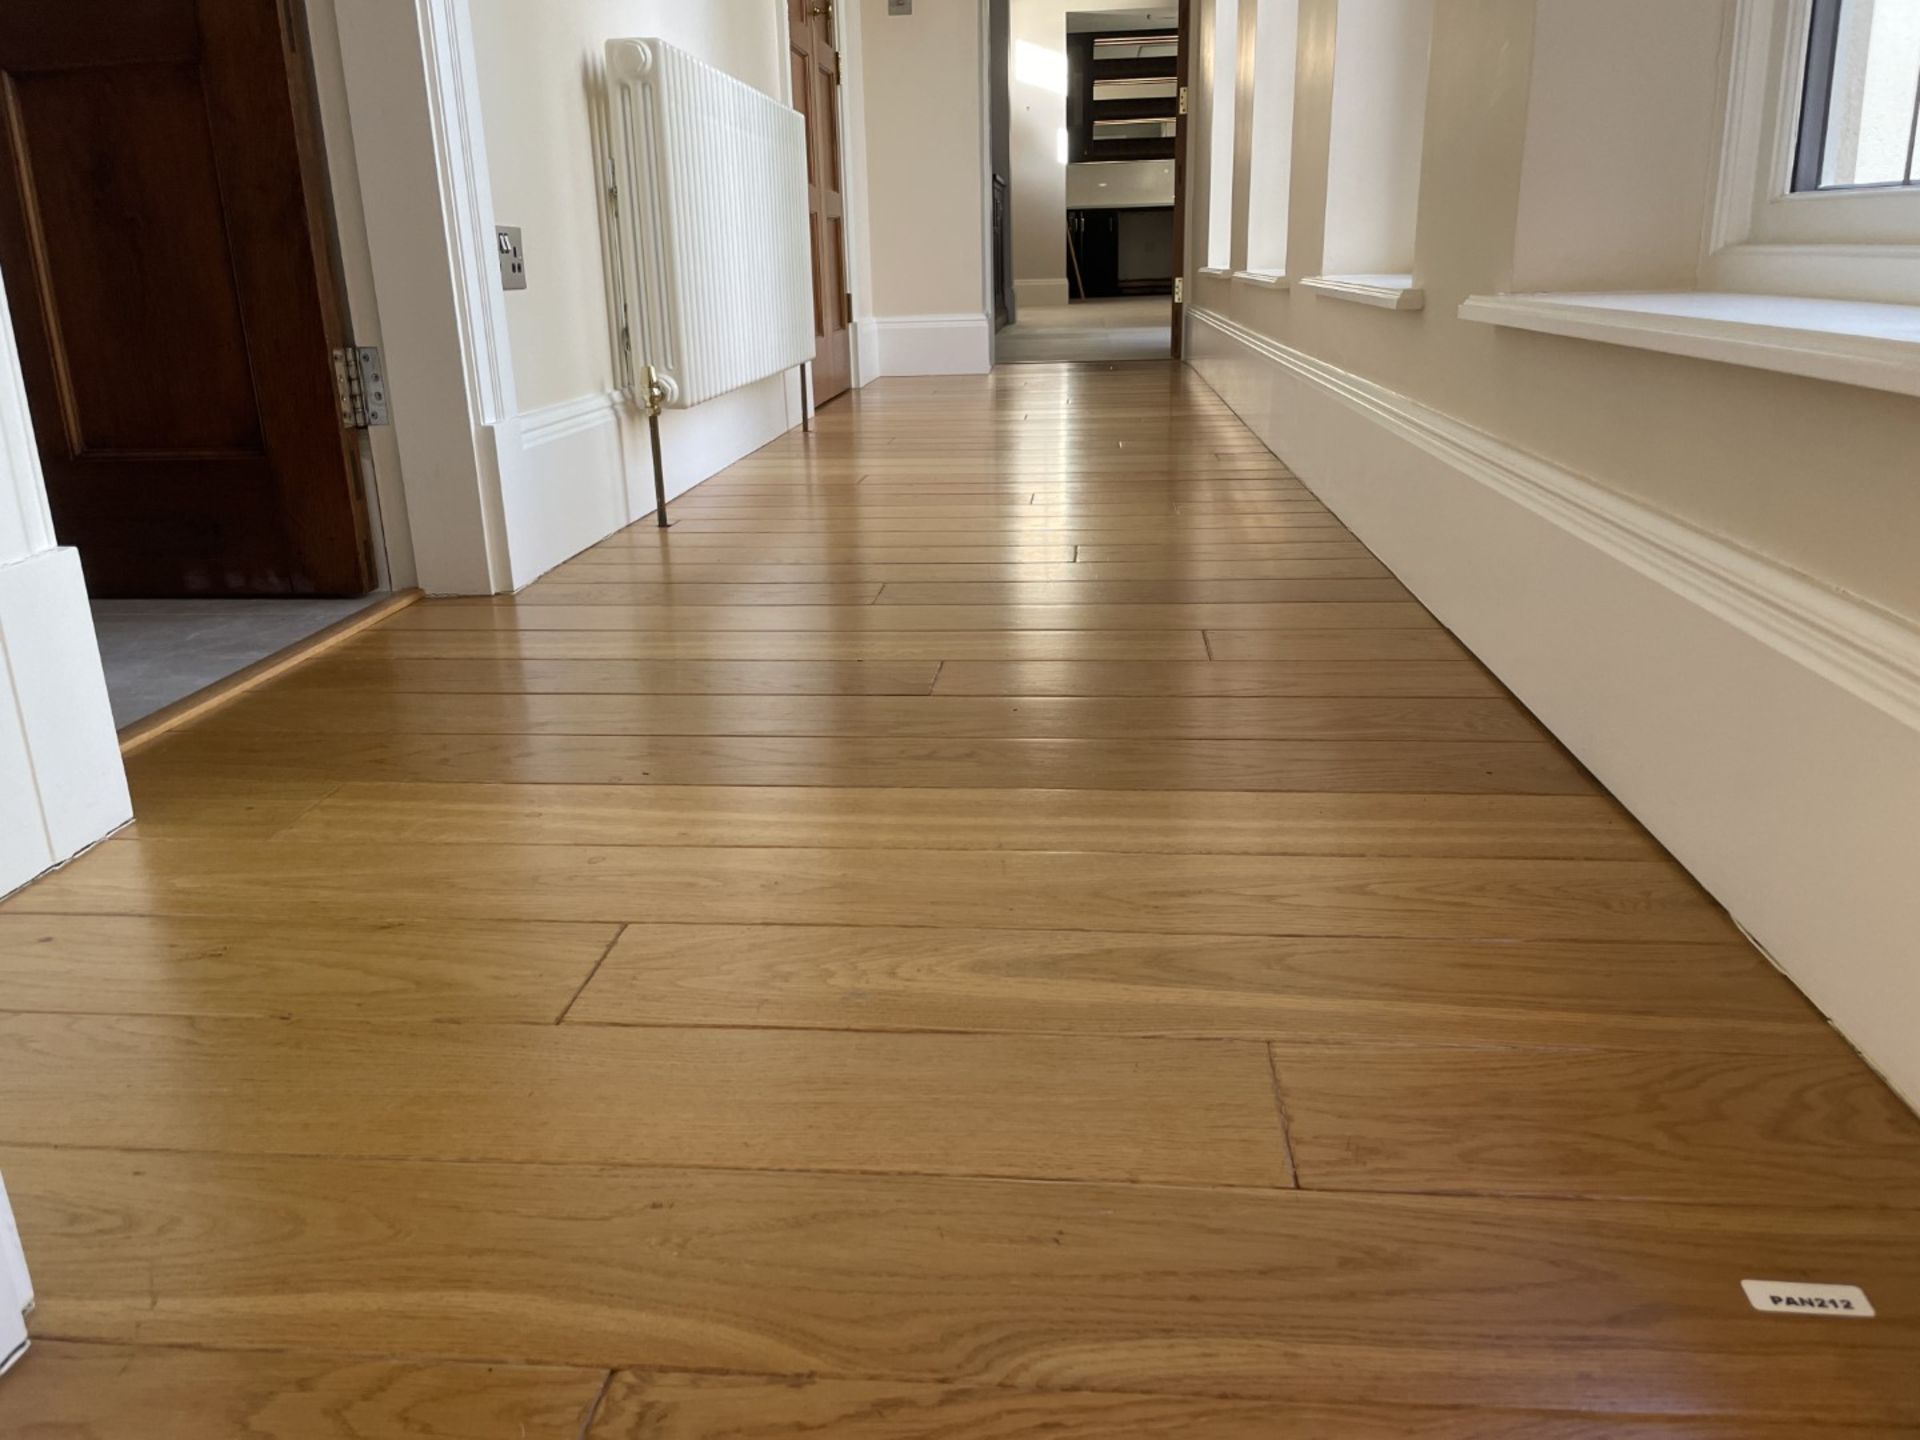 1 x Fine Oak Hardwood Hallway Flooring - 6.3 x 1.2 Metres - Ref: PAN212 - CL896 - NO VAT